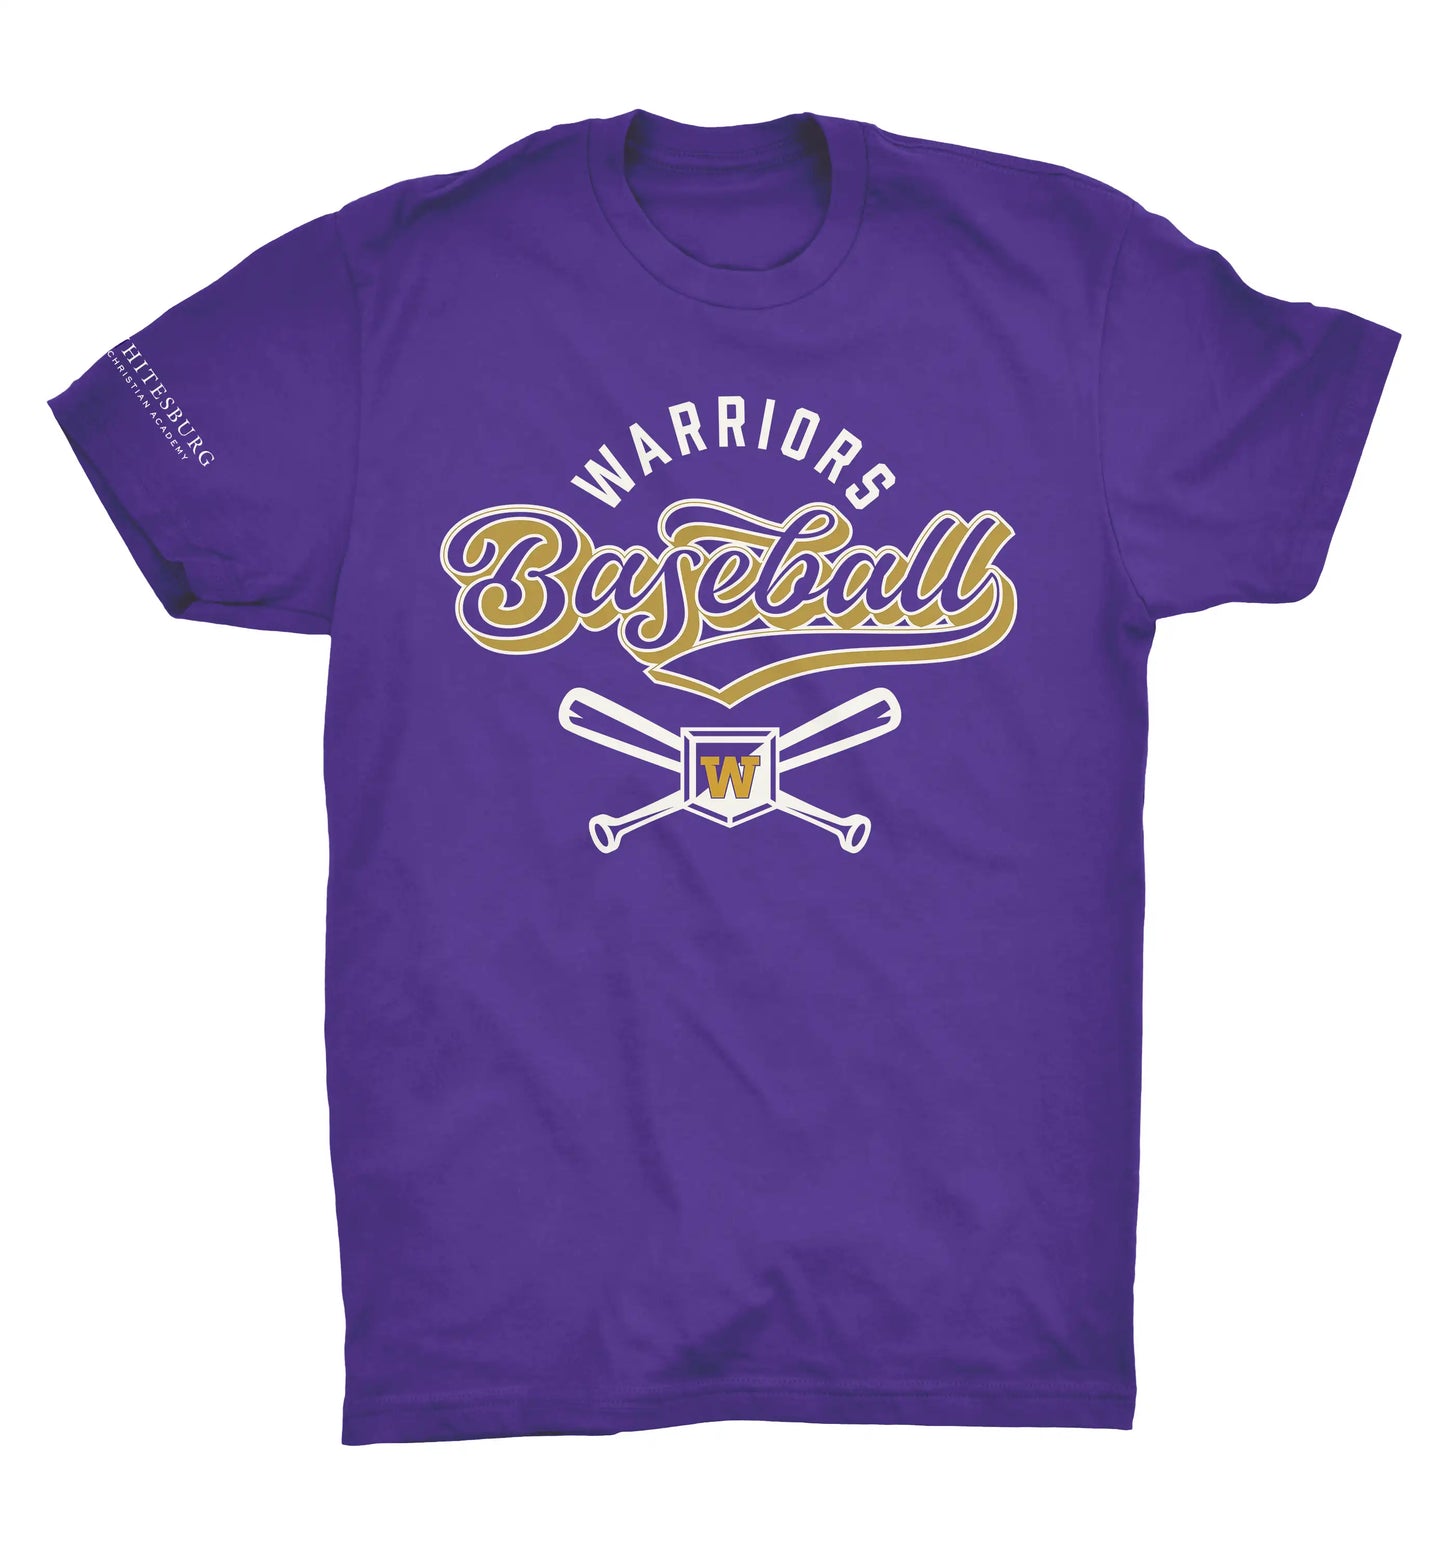 BASEBALL - Crossed Bats Tshirt